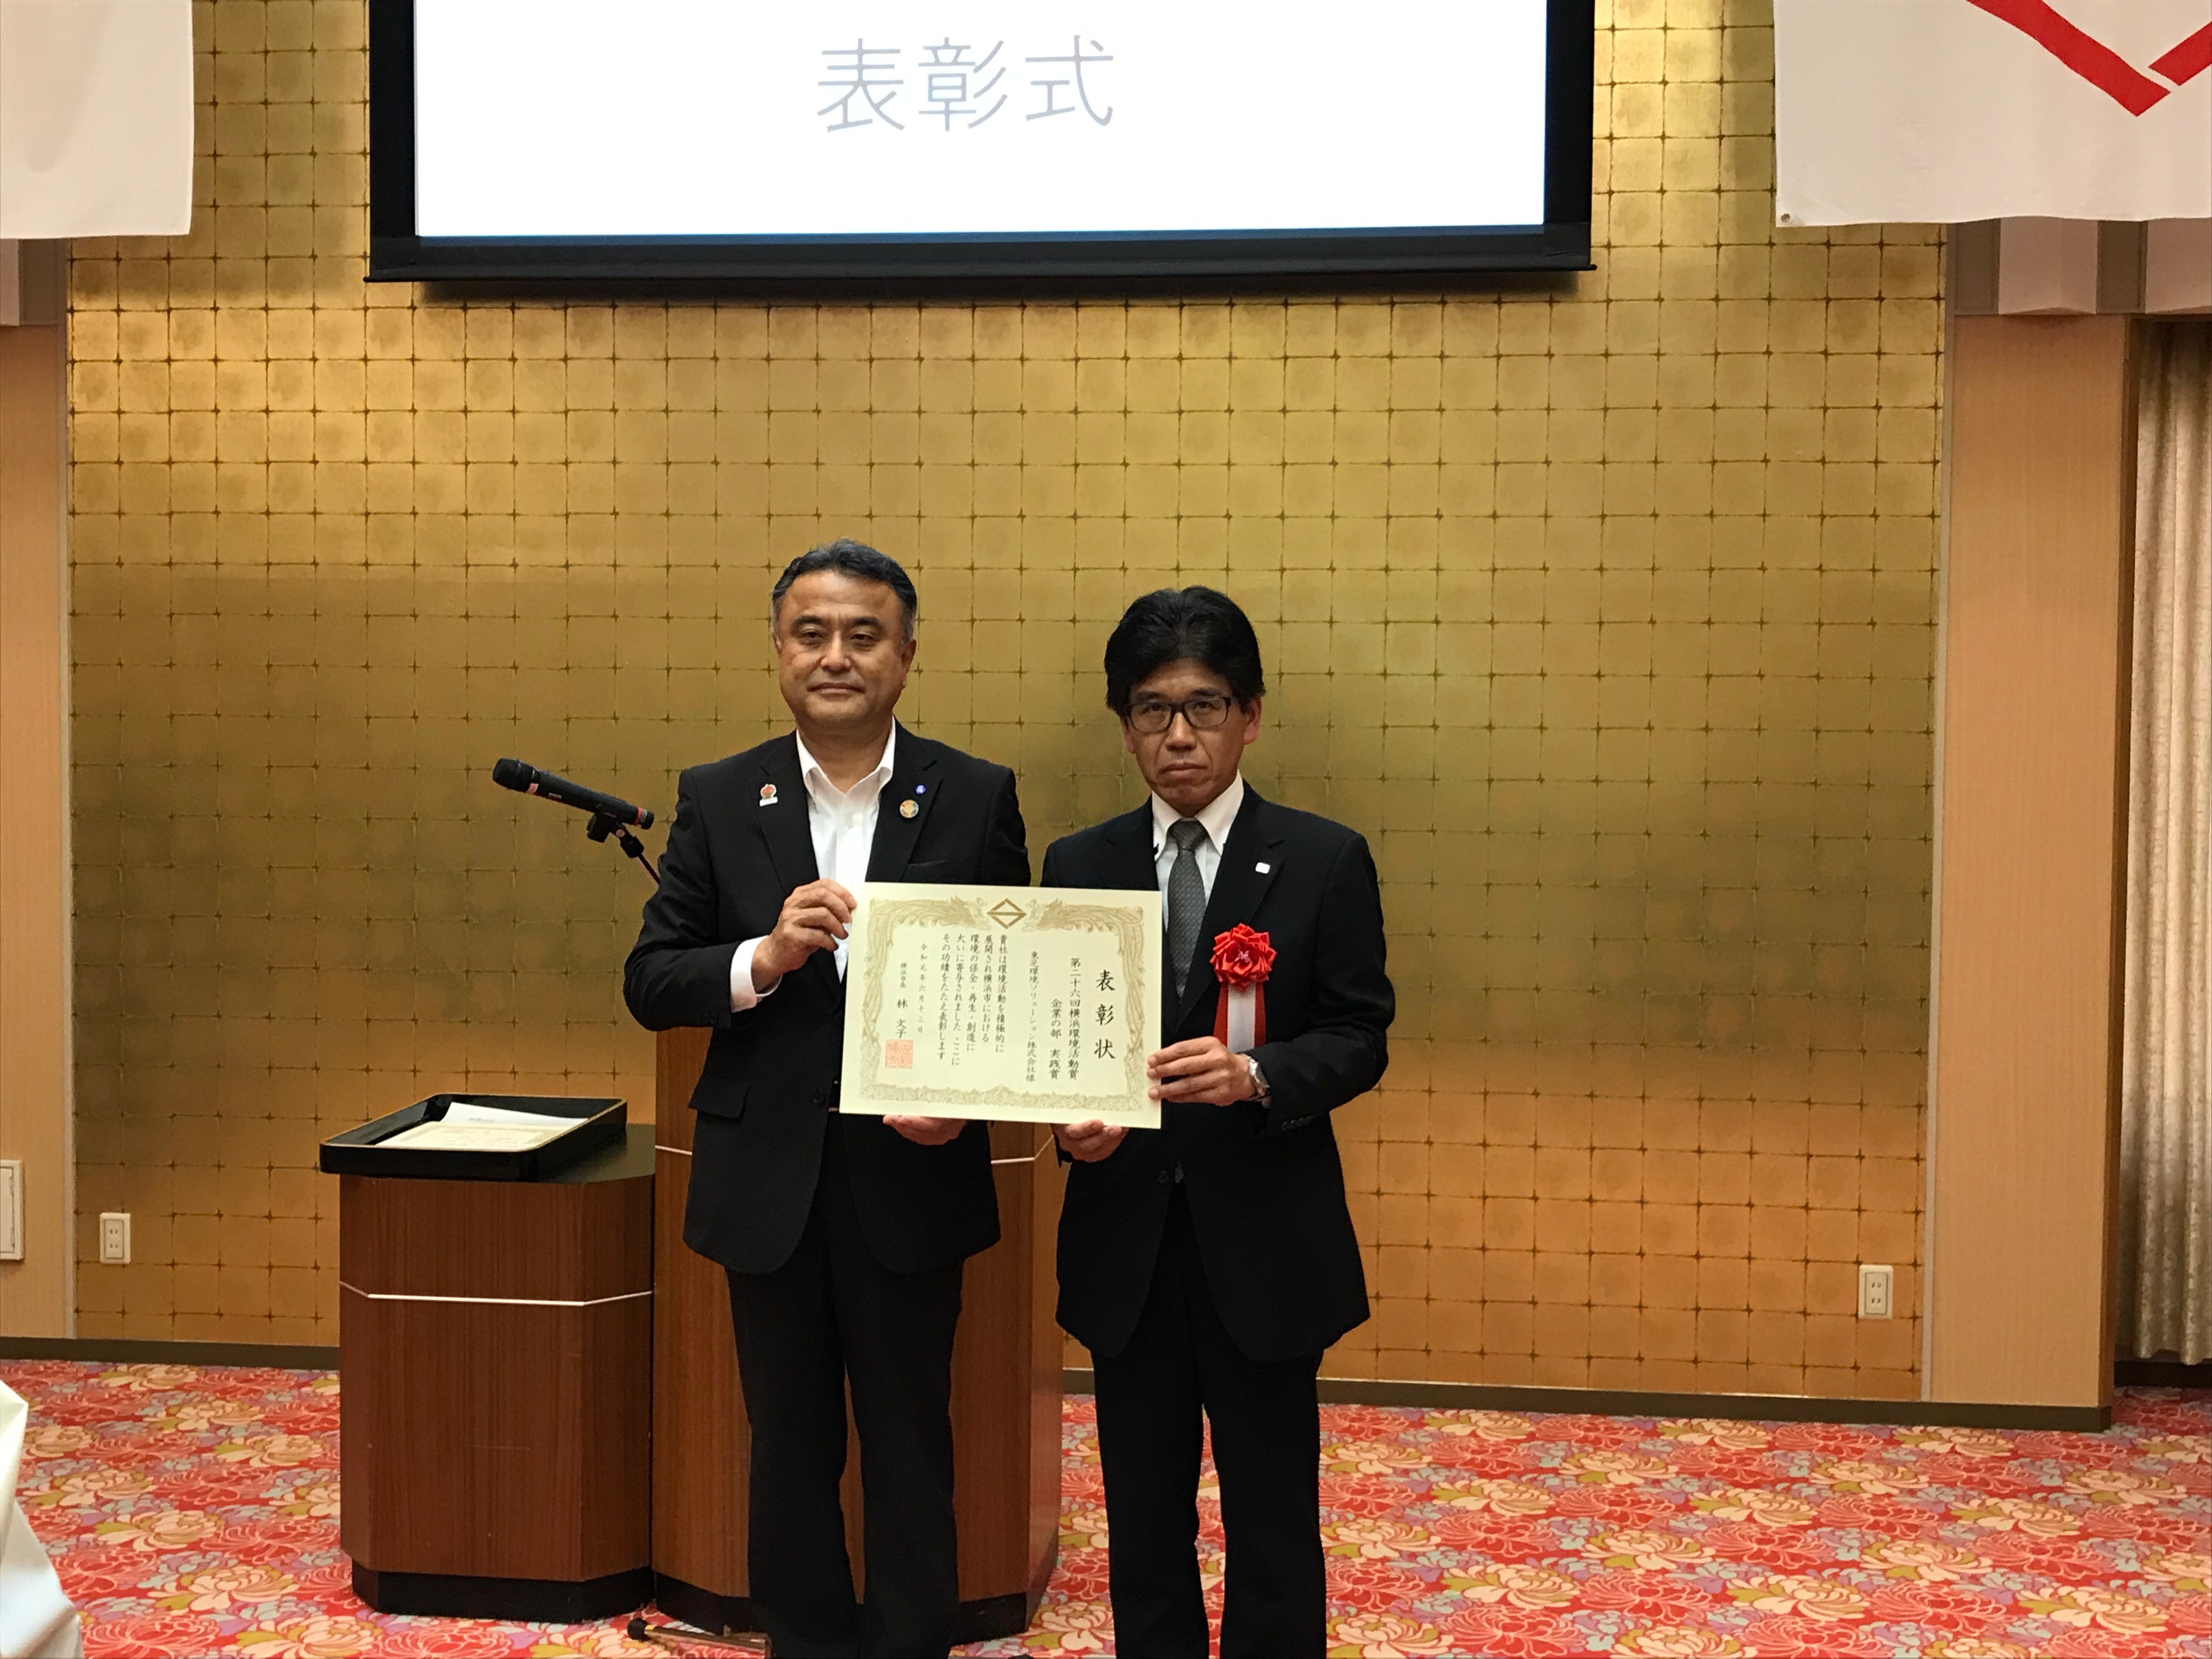 横浜市副市長 小林一美氏(左）より表彰状を授与される当社経営企画部長 鈴木茂明